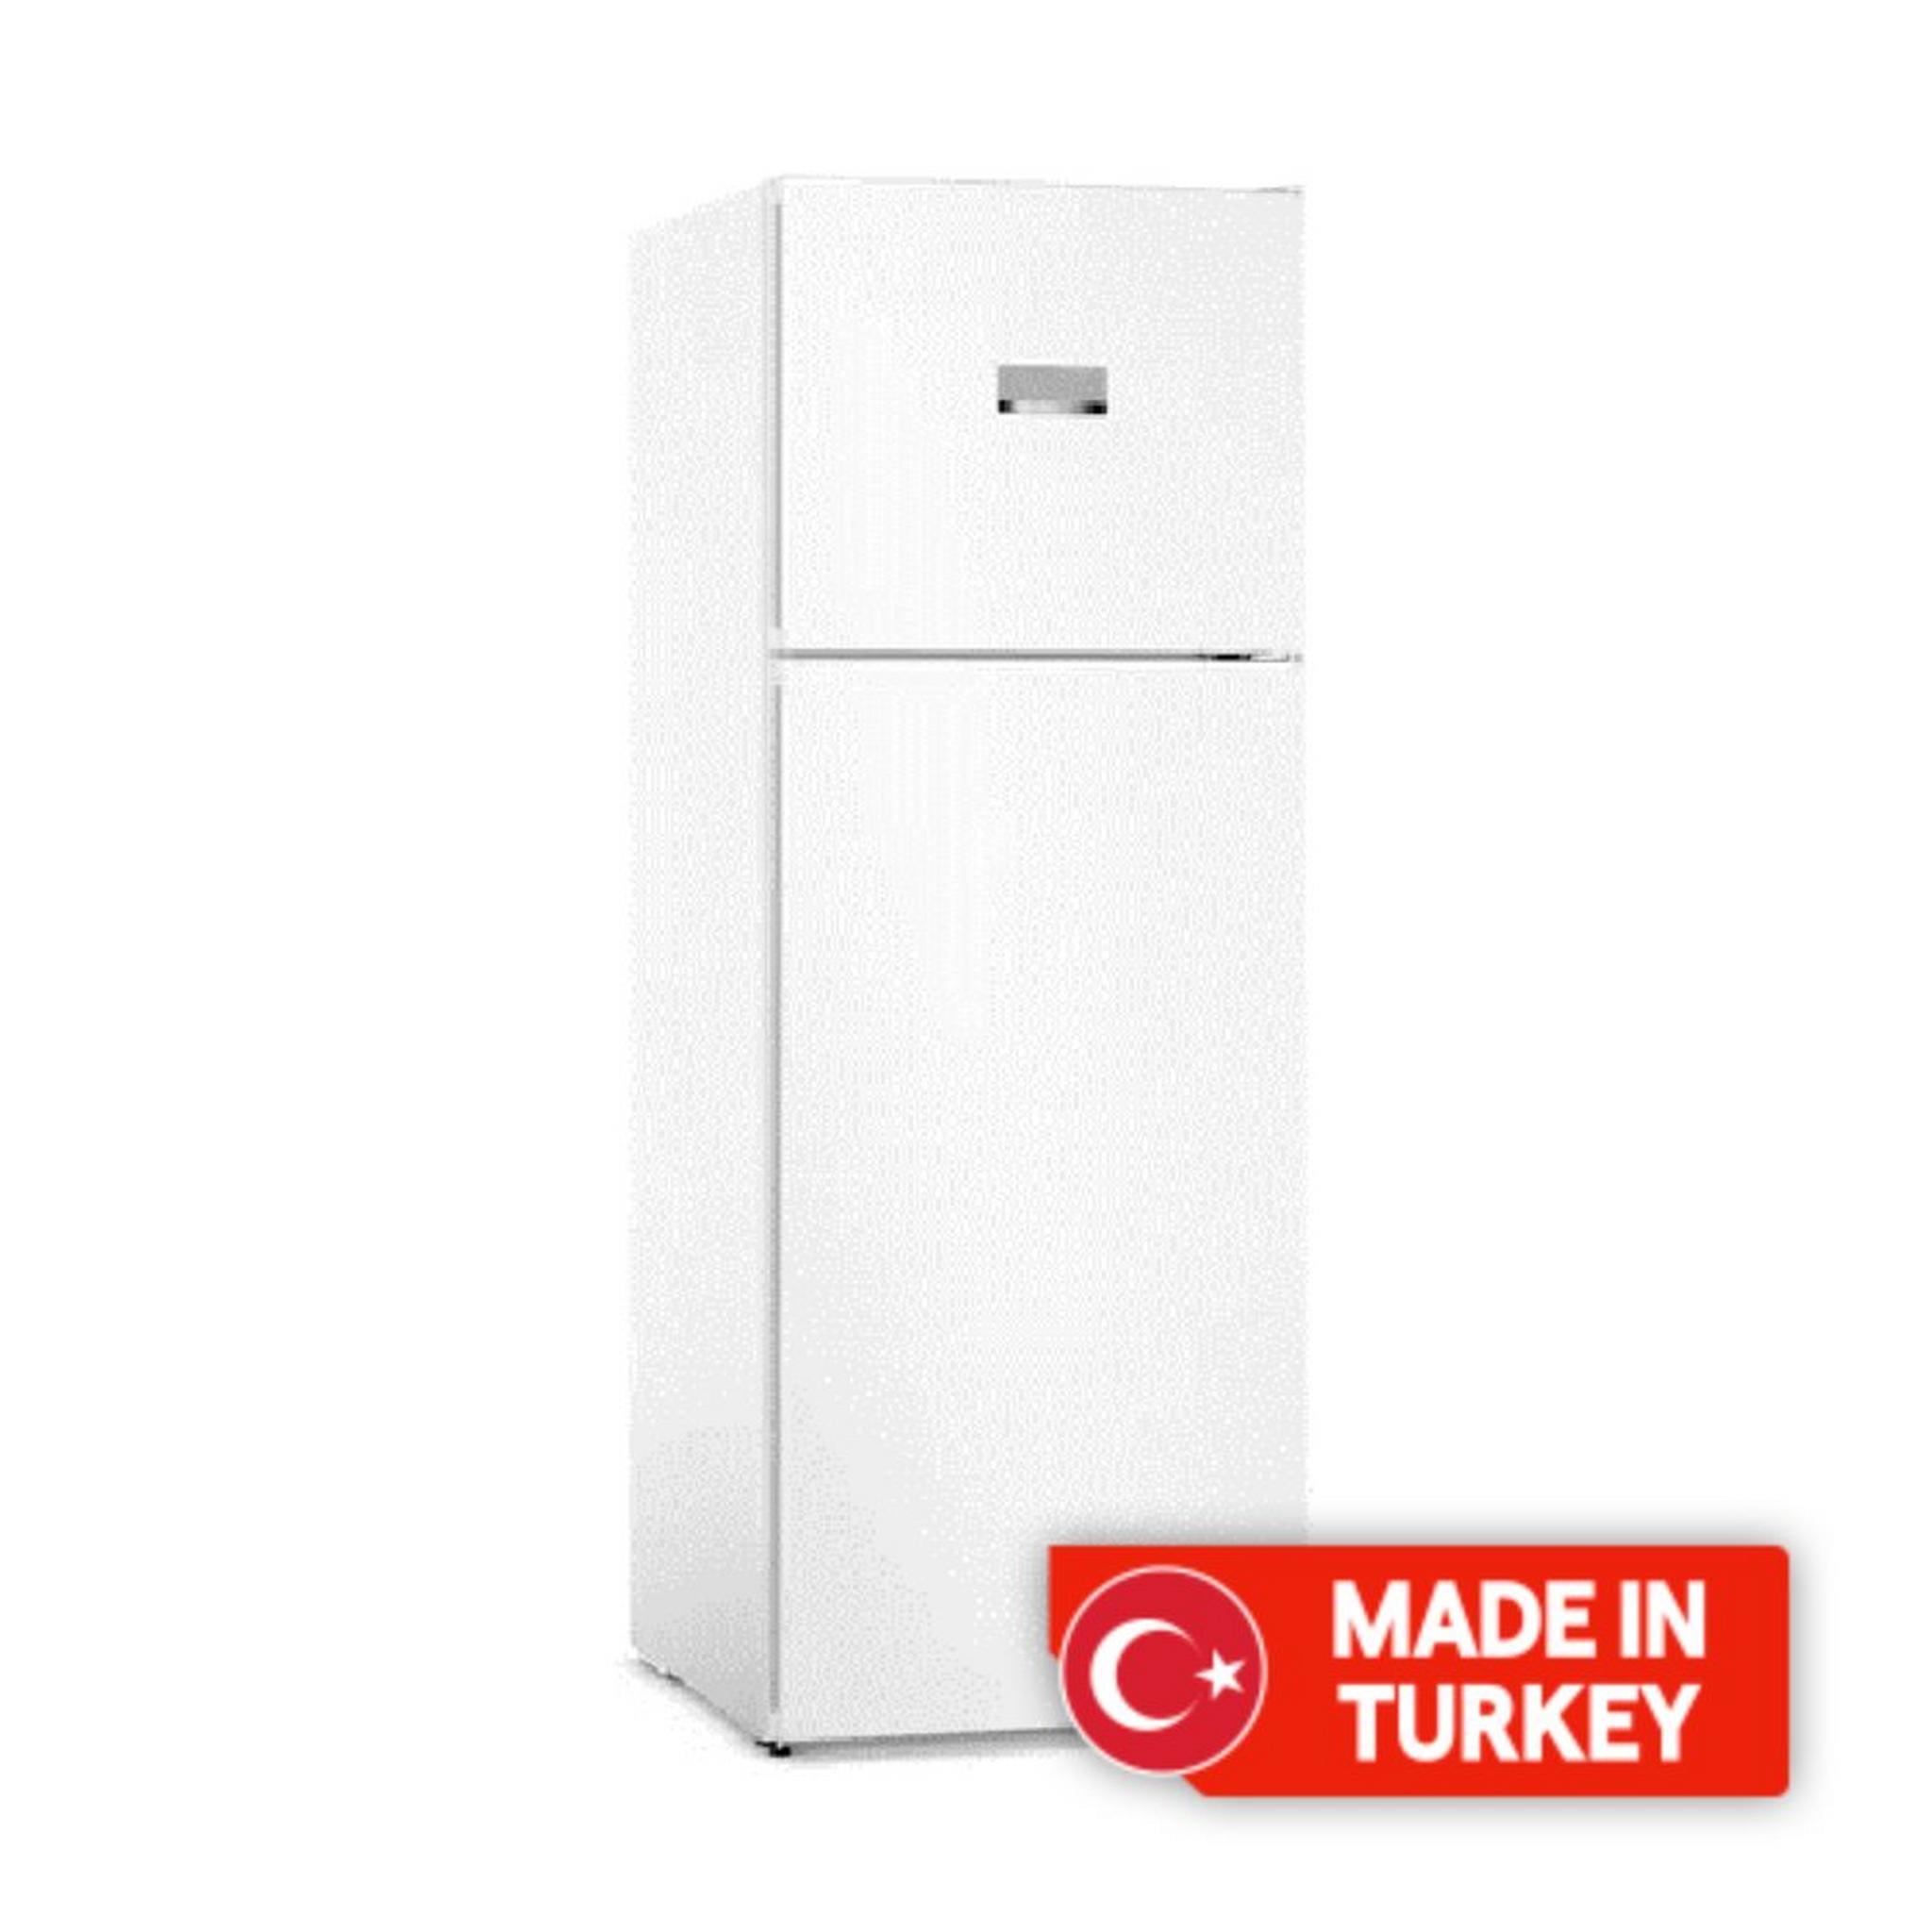 Bosch 19.8 CFT Top Mount Refrigerator (KDN56XW30M) – White